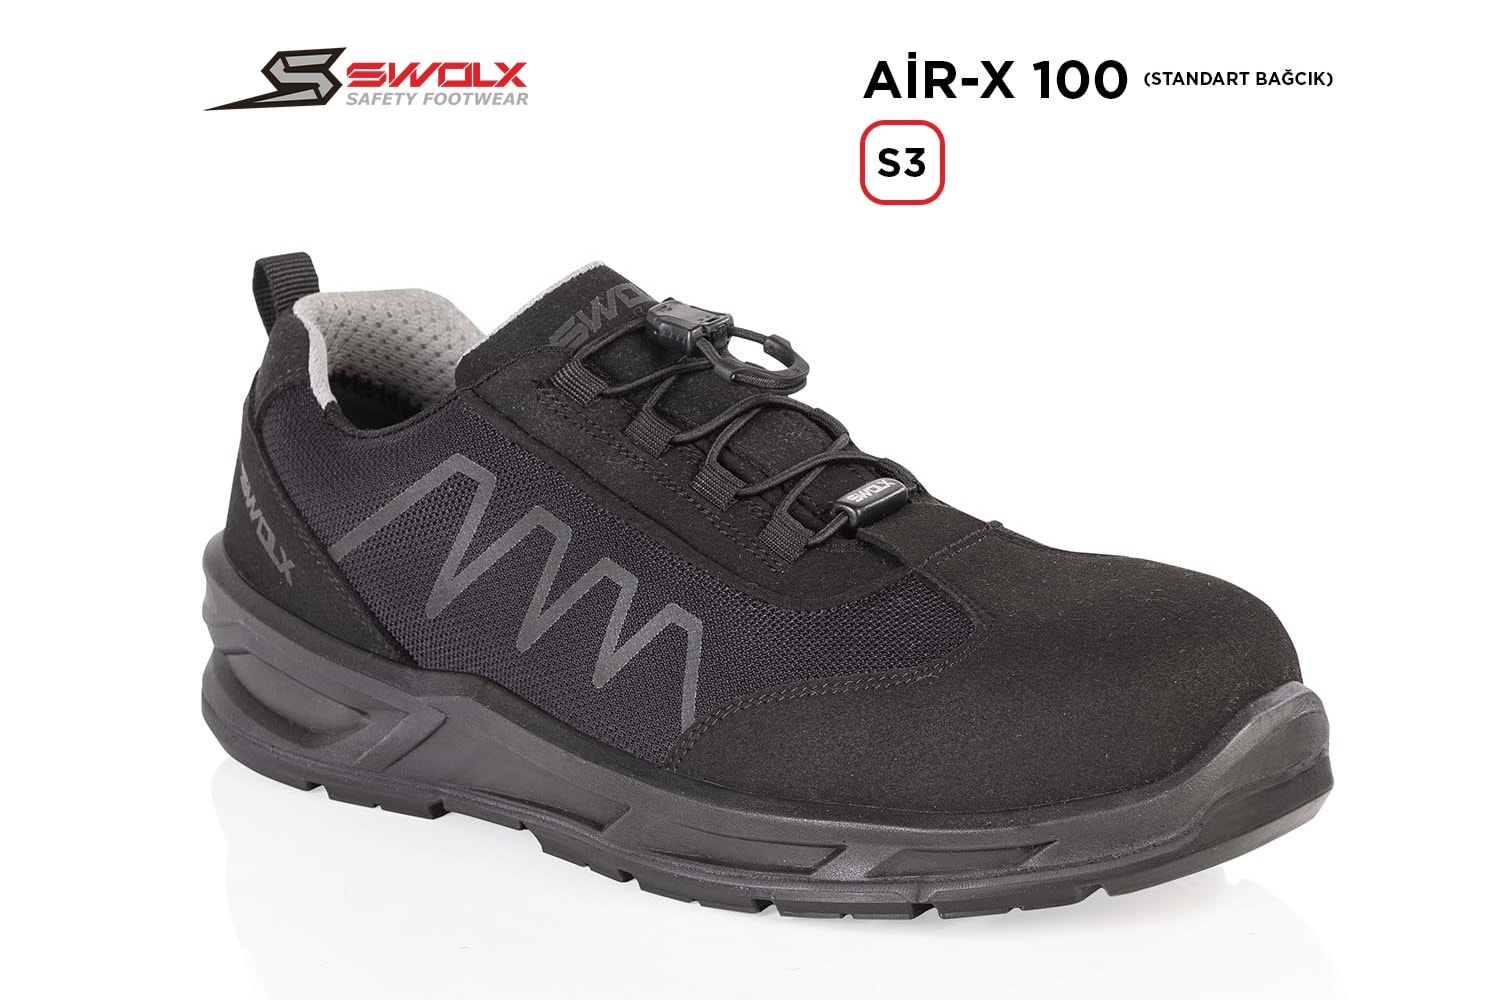 Swolx İş Ayakkabısı - Air-X Standart Bağcık 100 S3 - 43